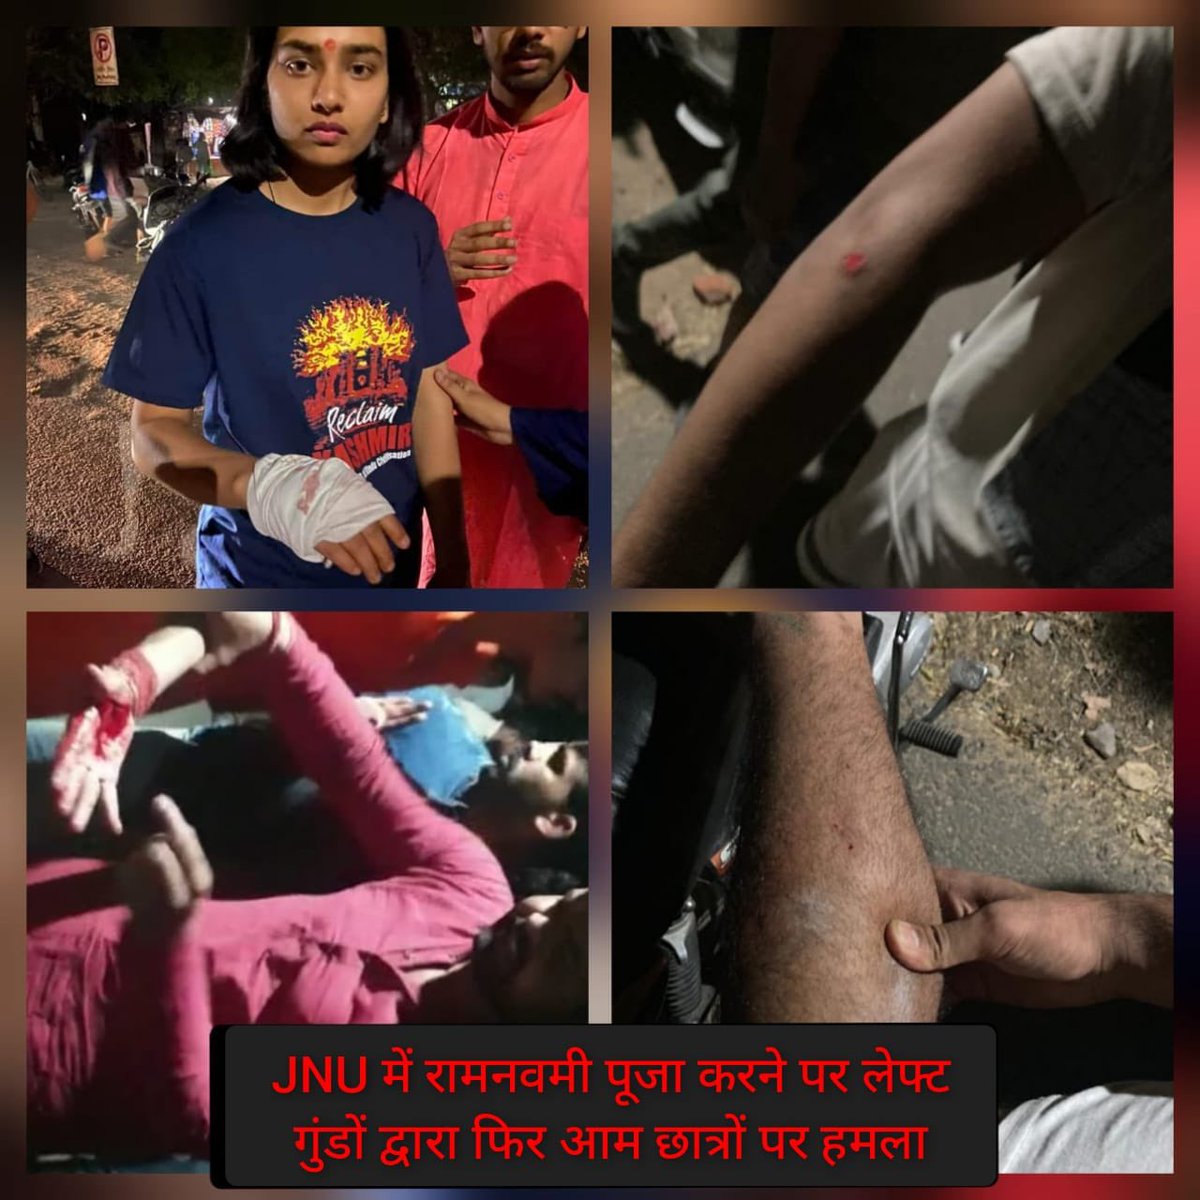 राम नवमी में कार्यक्रम में सम्मिलित होने आए दिव्यांग छात्र व अन्य JNU के छात्र/छात्राओं पर लाल आतंकियों द्वारा सुनियोजित तरीक़े से पथराव व घातक हथियारों से हमला किया गया। 

#LeftAgainstRam #LeftViolenceInJNU